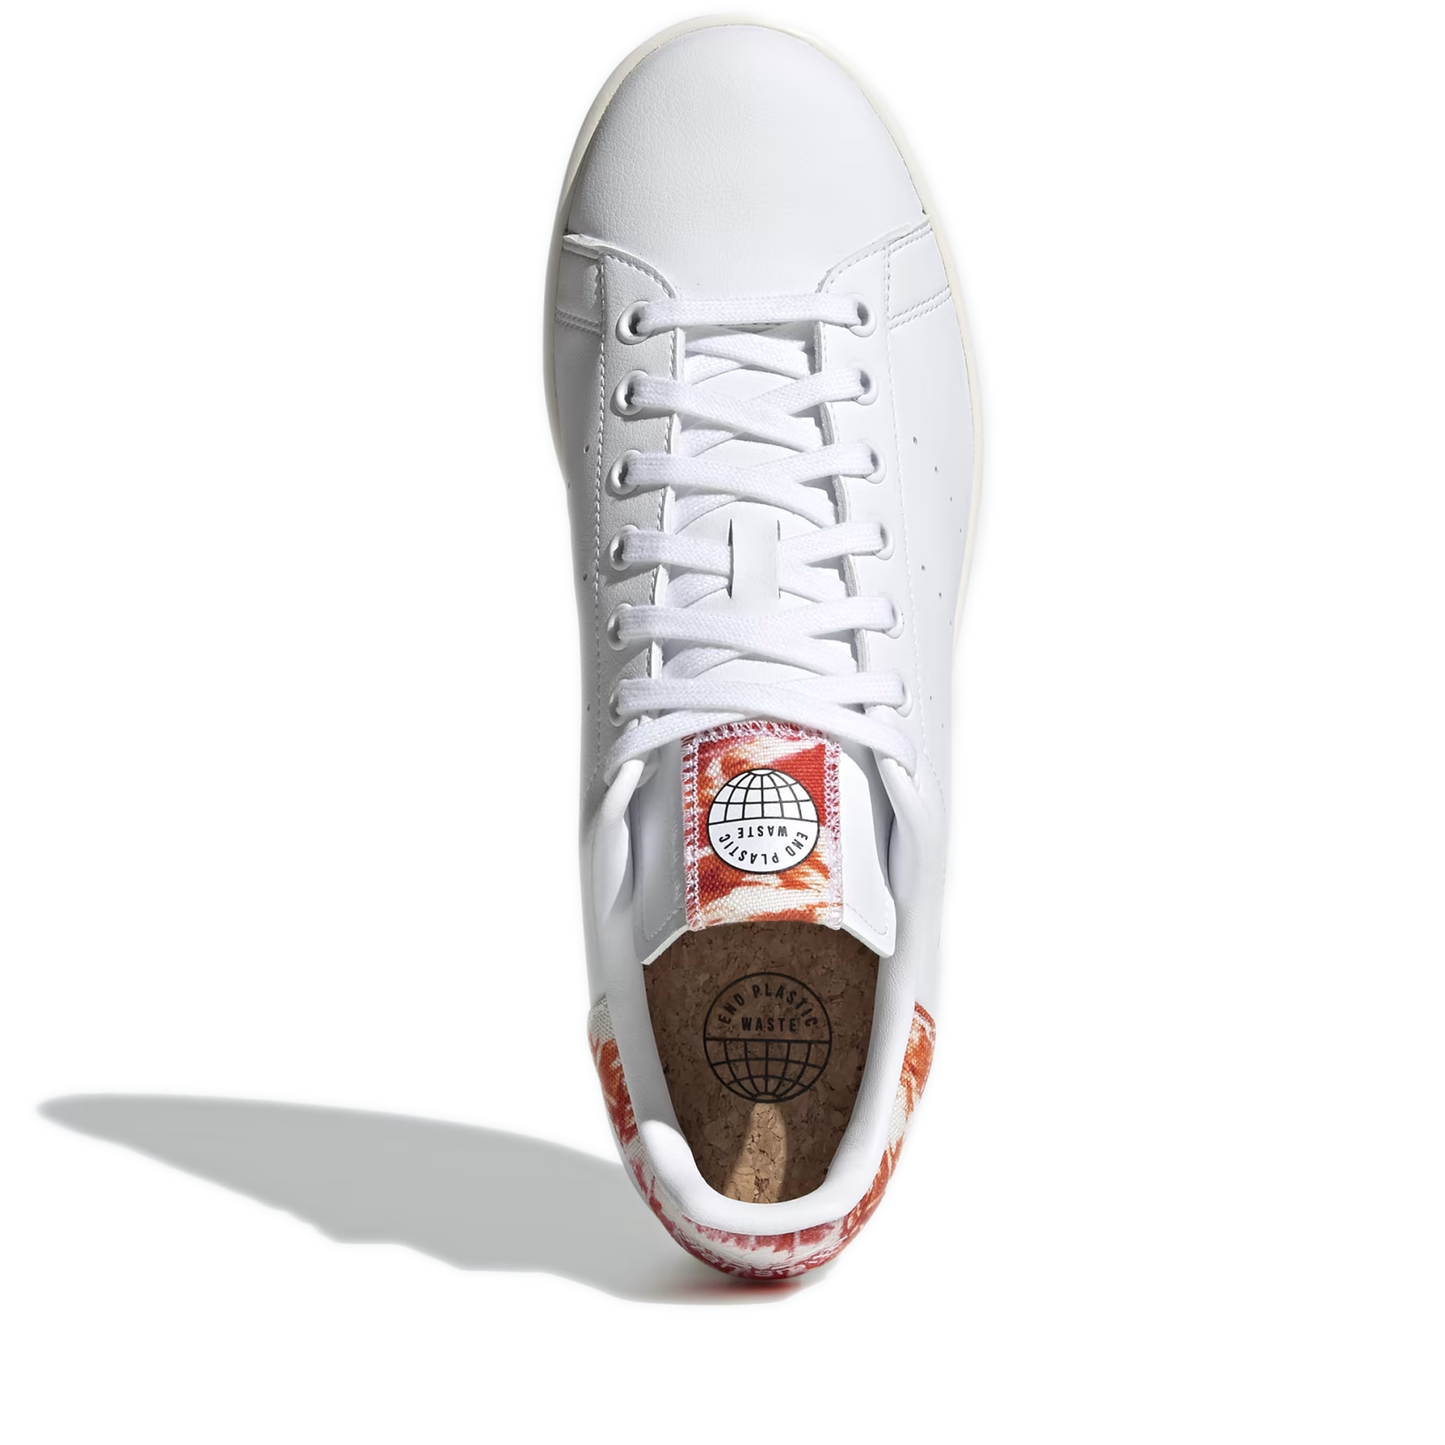 Men's Adidas Stan Smith Shoes - White/ Orange